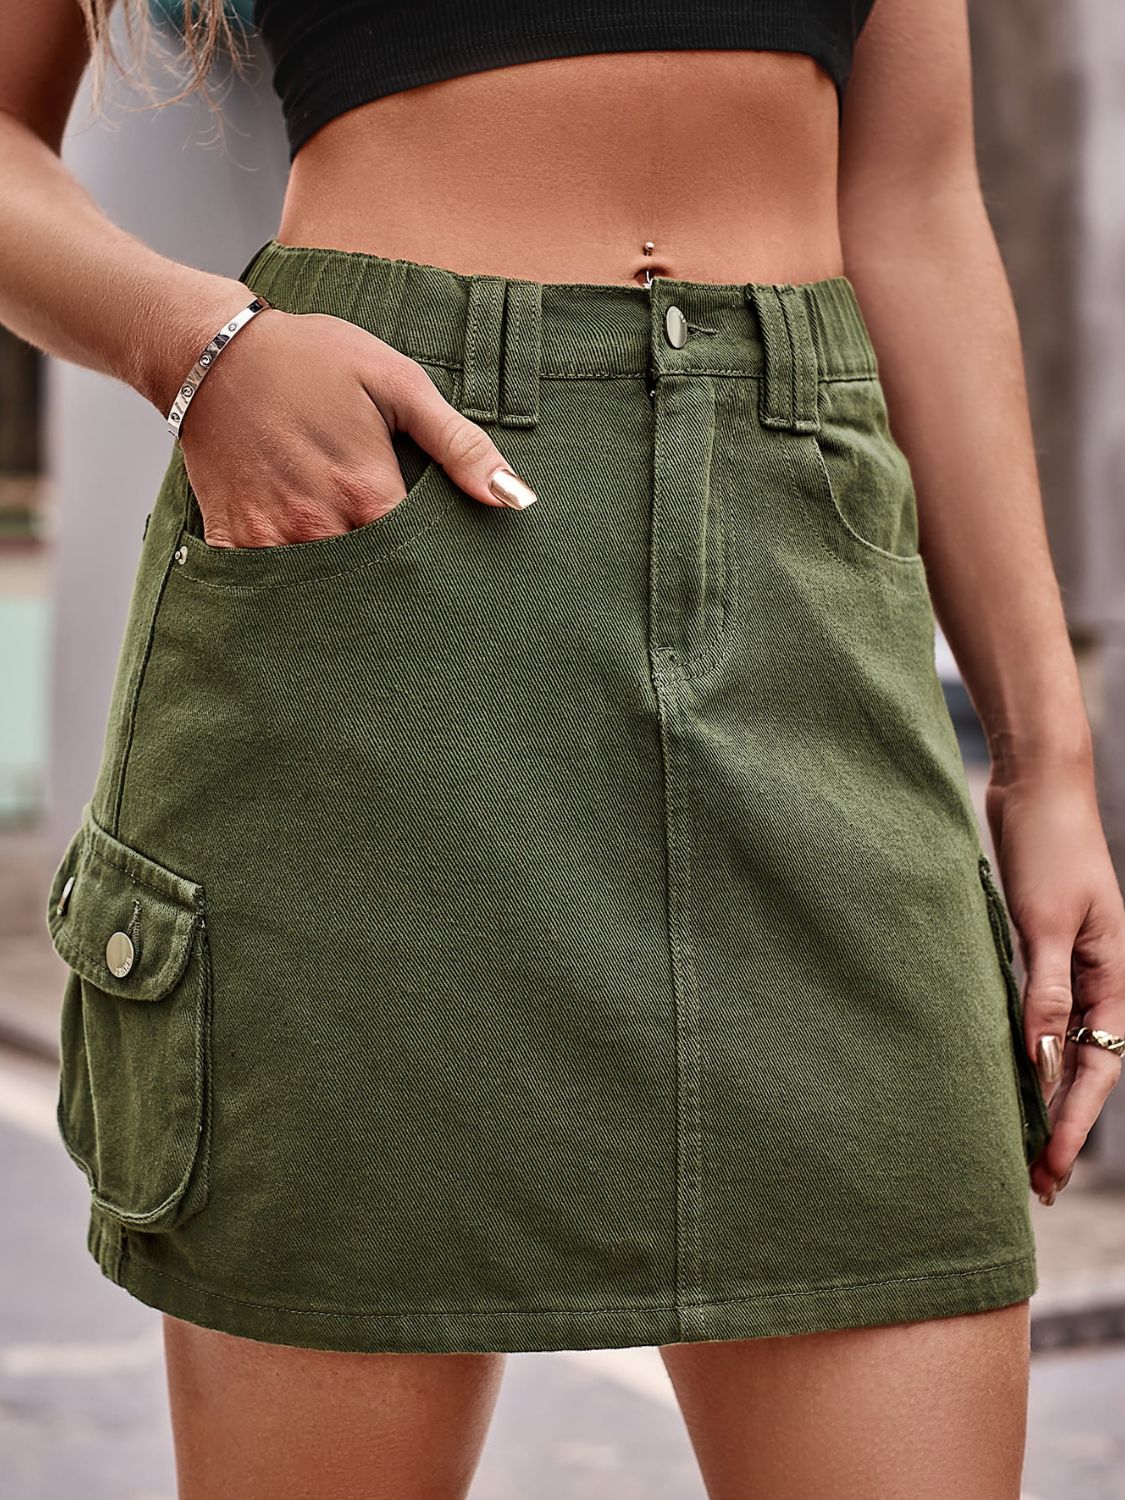 Women's Full Size Denim Mini Skirt with Pockets